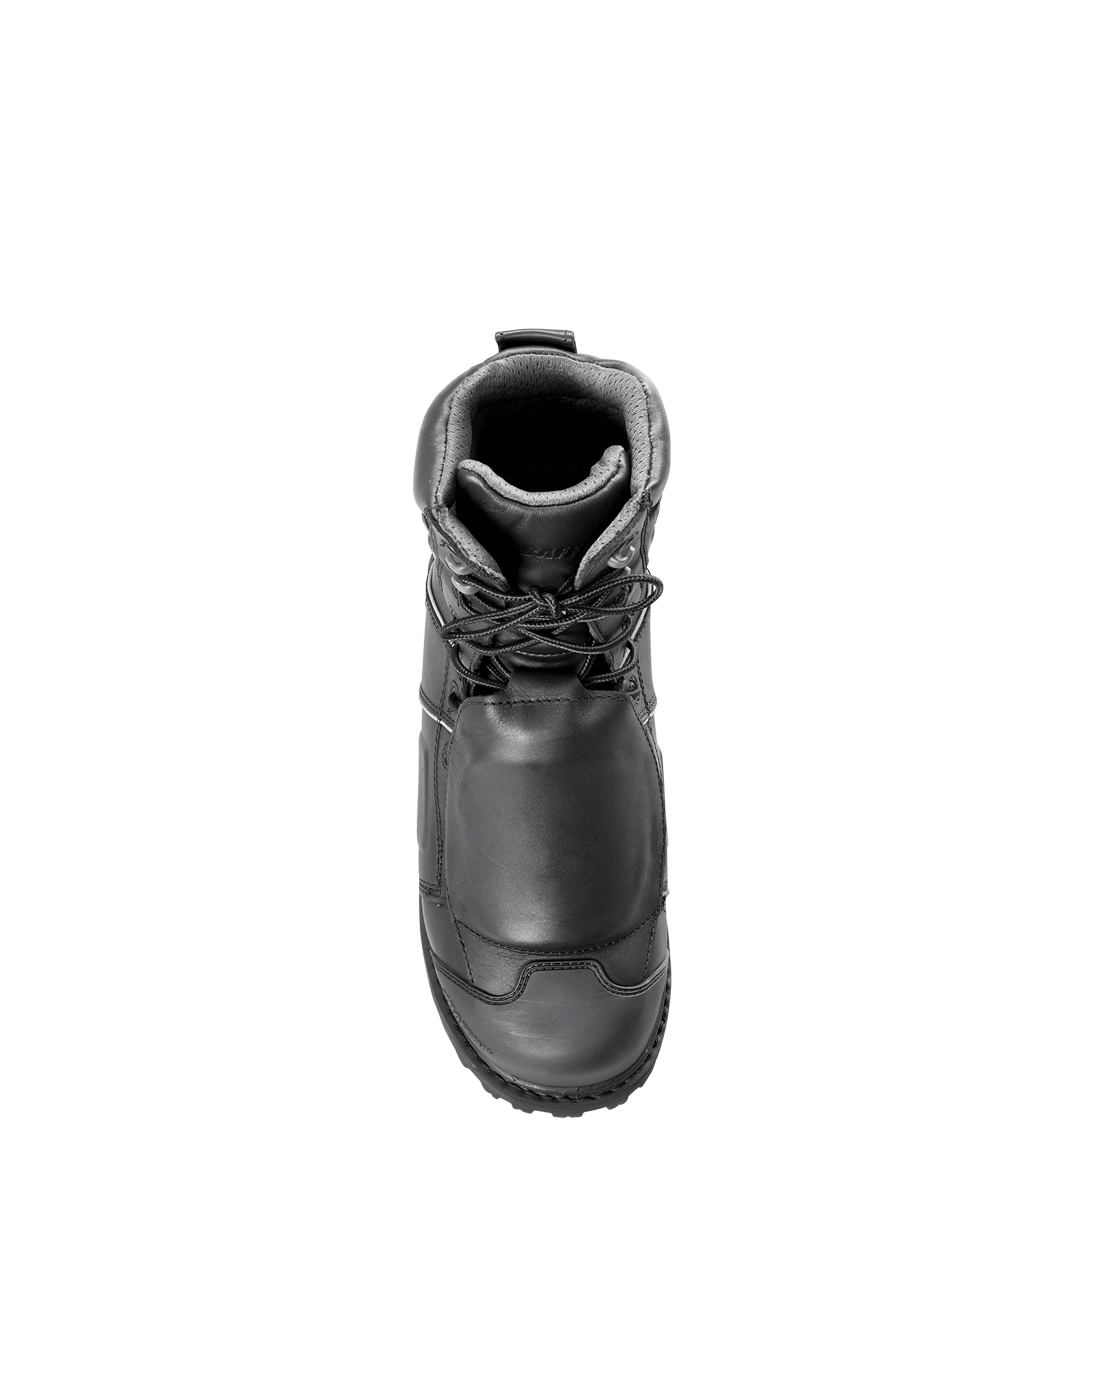 Baffin Monster External Metguard 8” Work Boot | Black | Sizes 7 - 14 Work Boots - Cleanflow